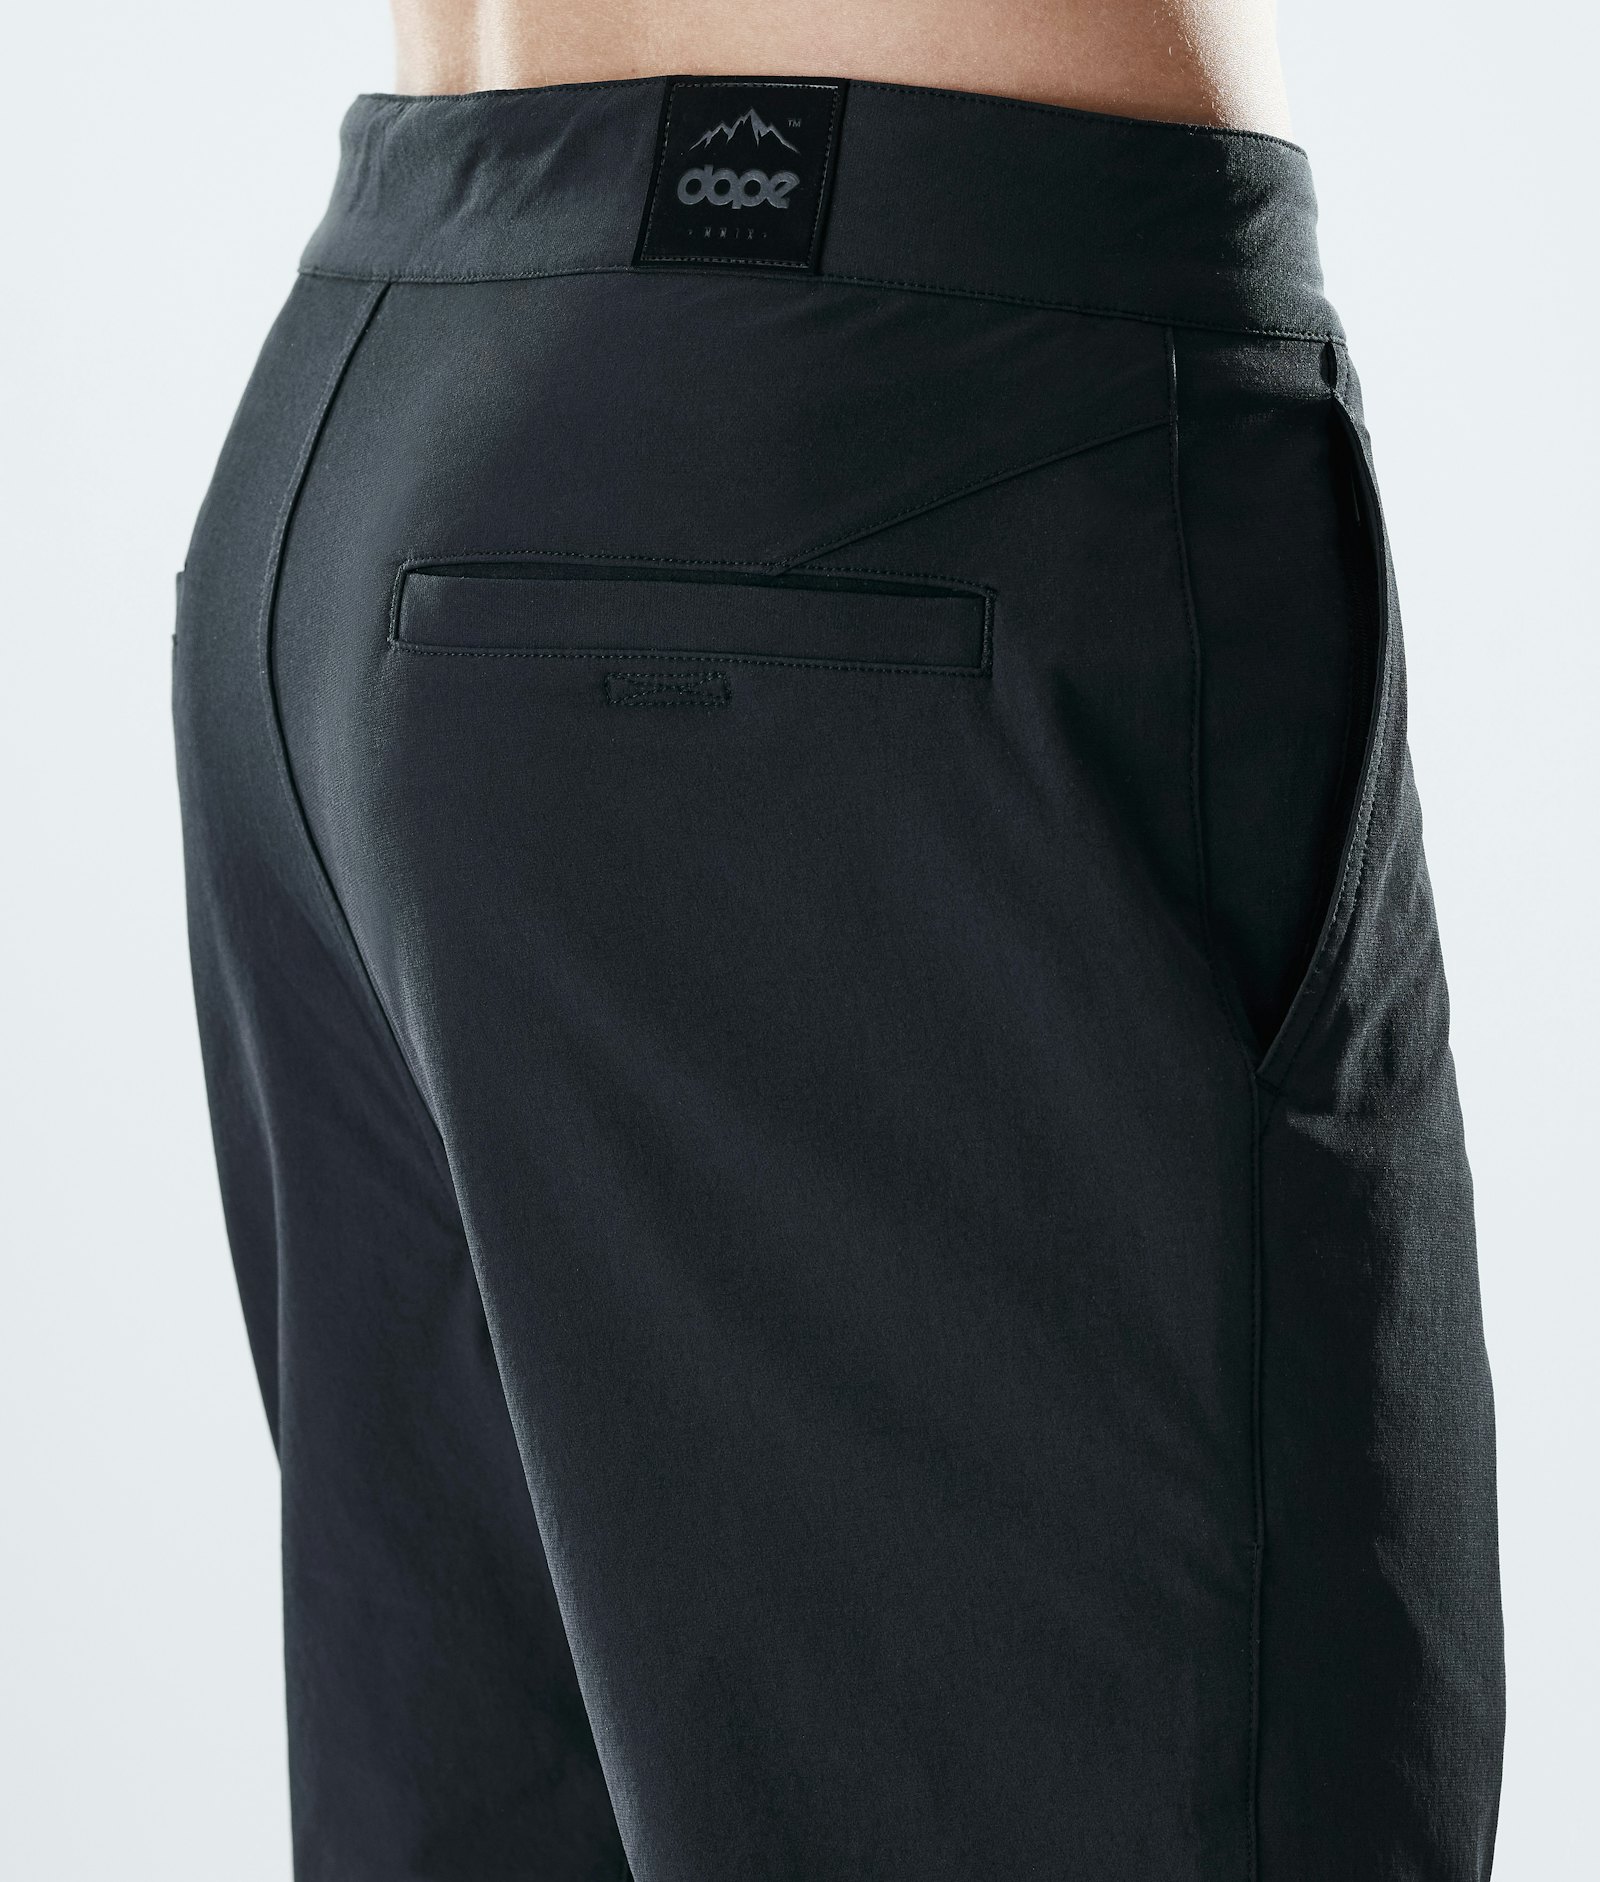 Rover Tech 2021 Outdoor Pants Men Black Renewed